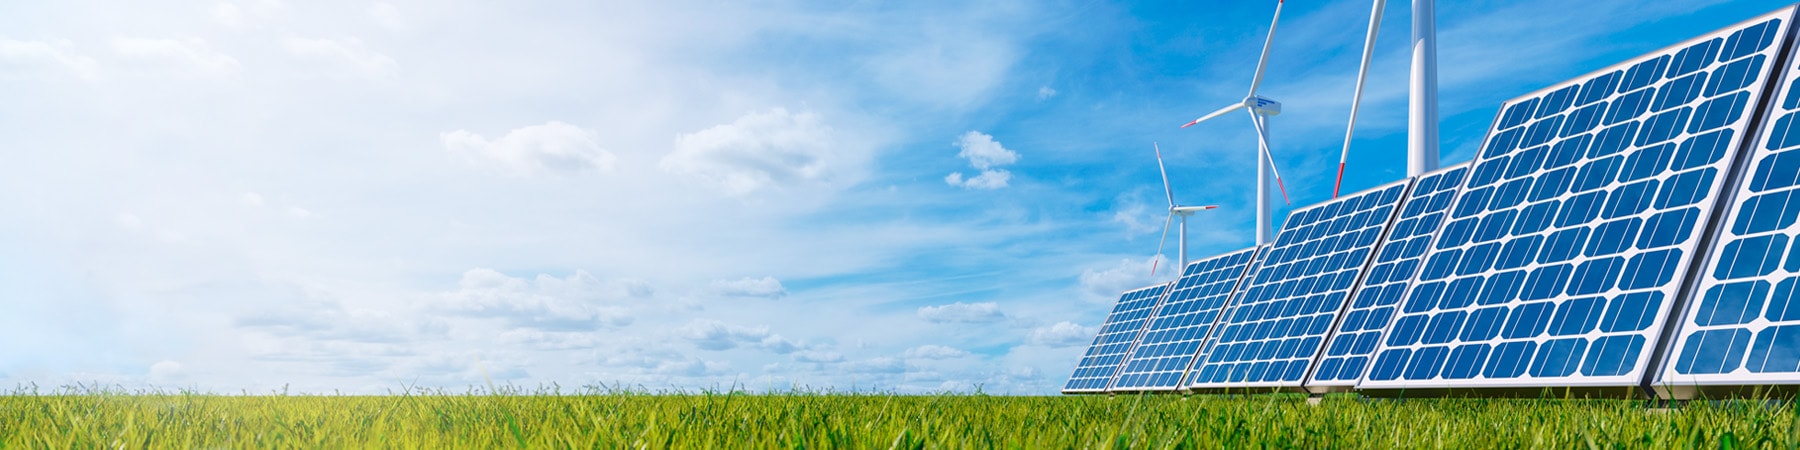 Windkraftanlagen Solarpanelen auf einer Wiese